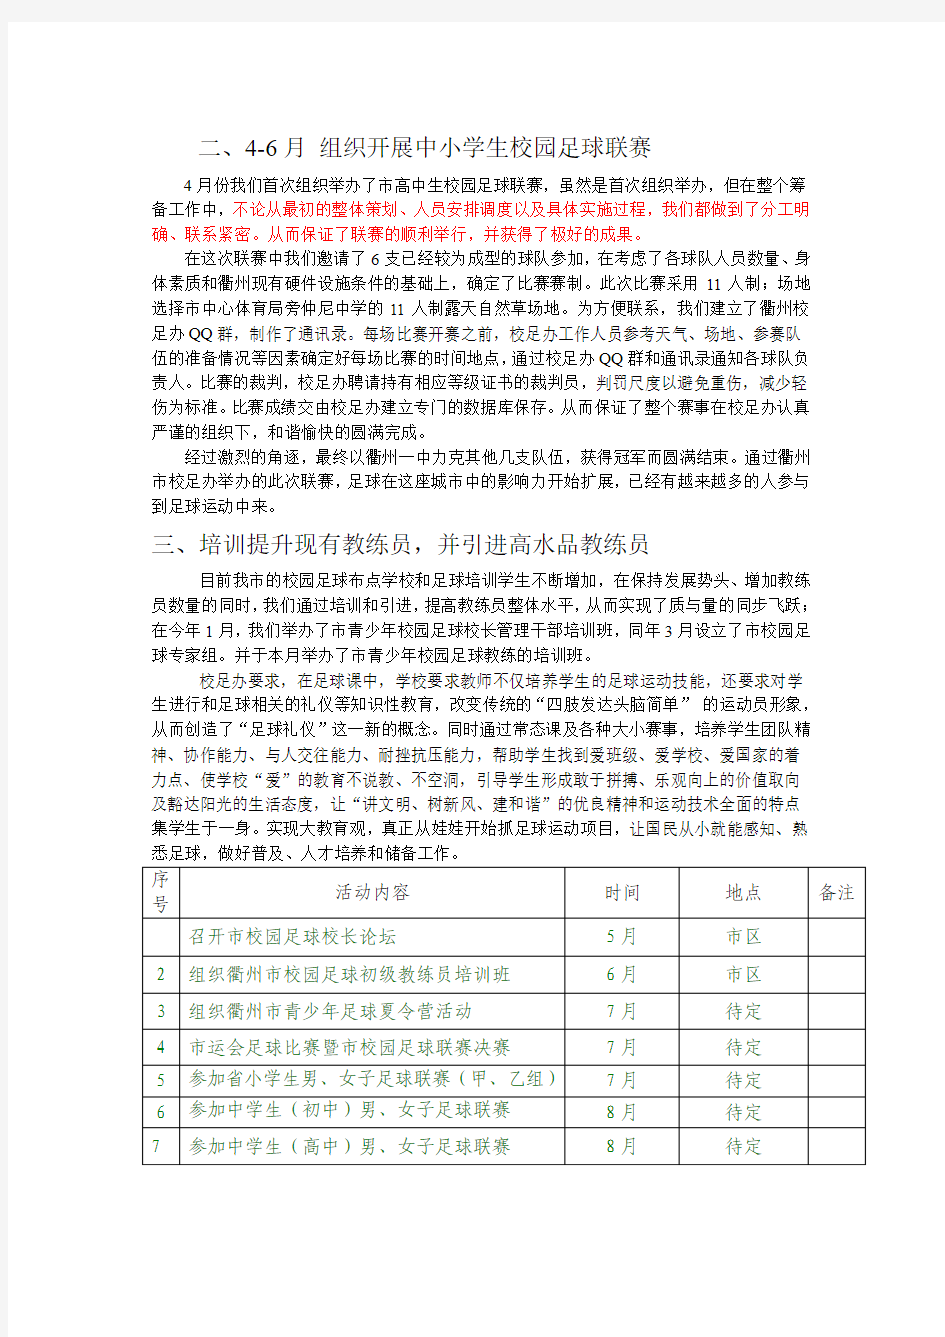 2013年浙江省校园足球联赛宣传网络、注册管理培训班的发言稿